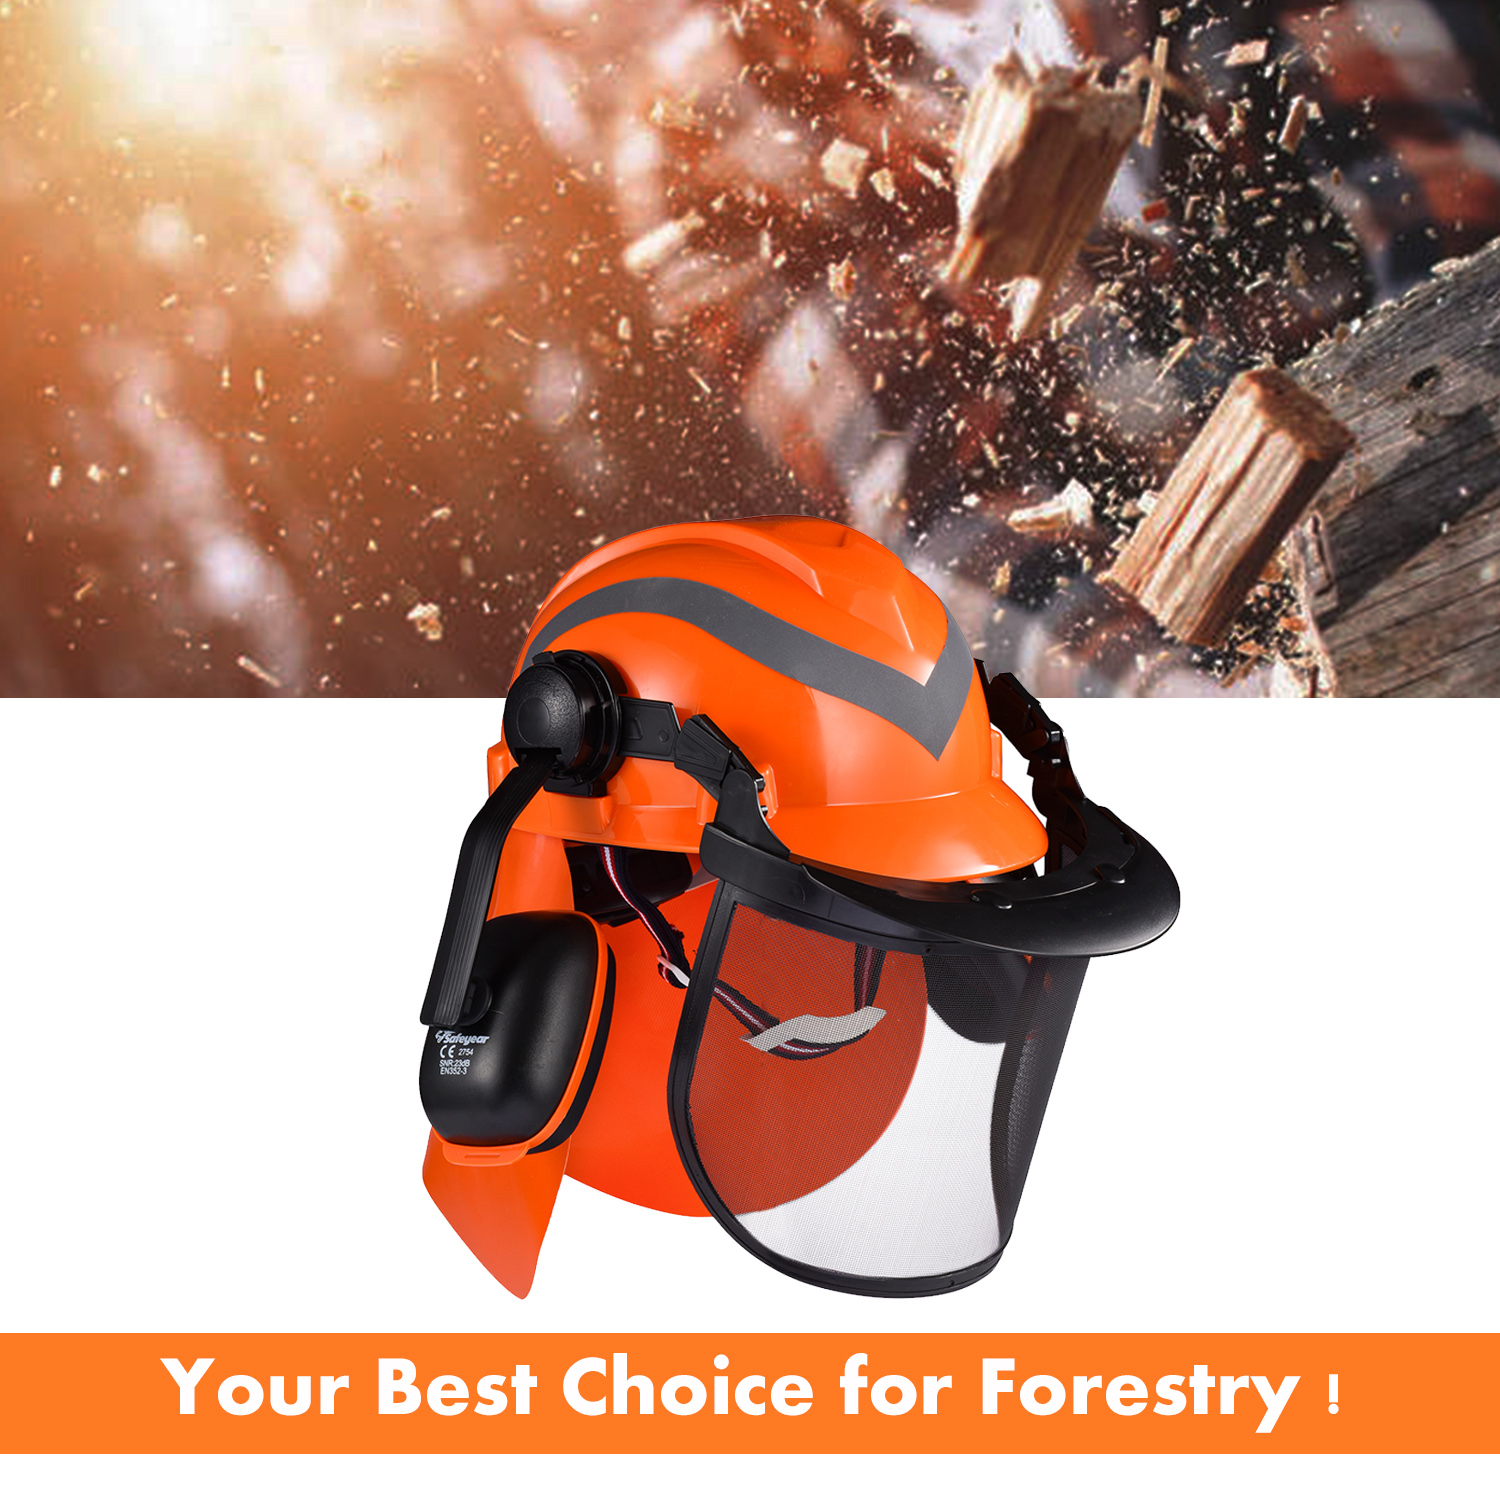 Casques forestiers Ready Stock avec écran facial M-5009 Orange